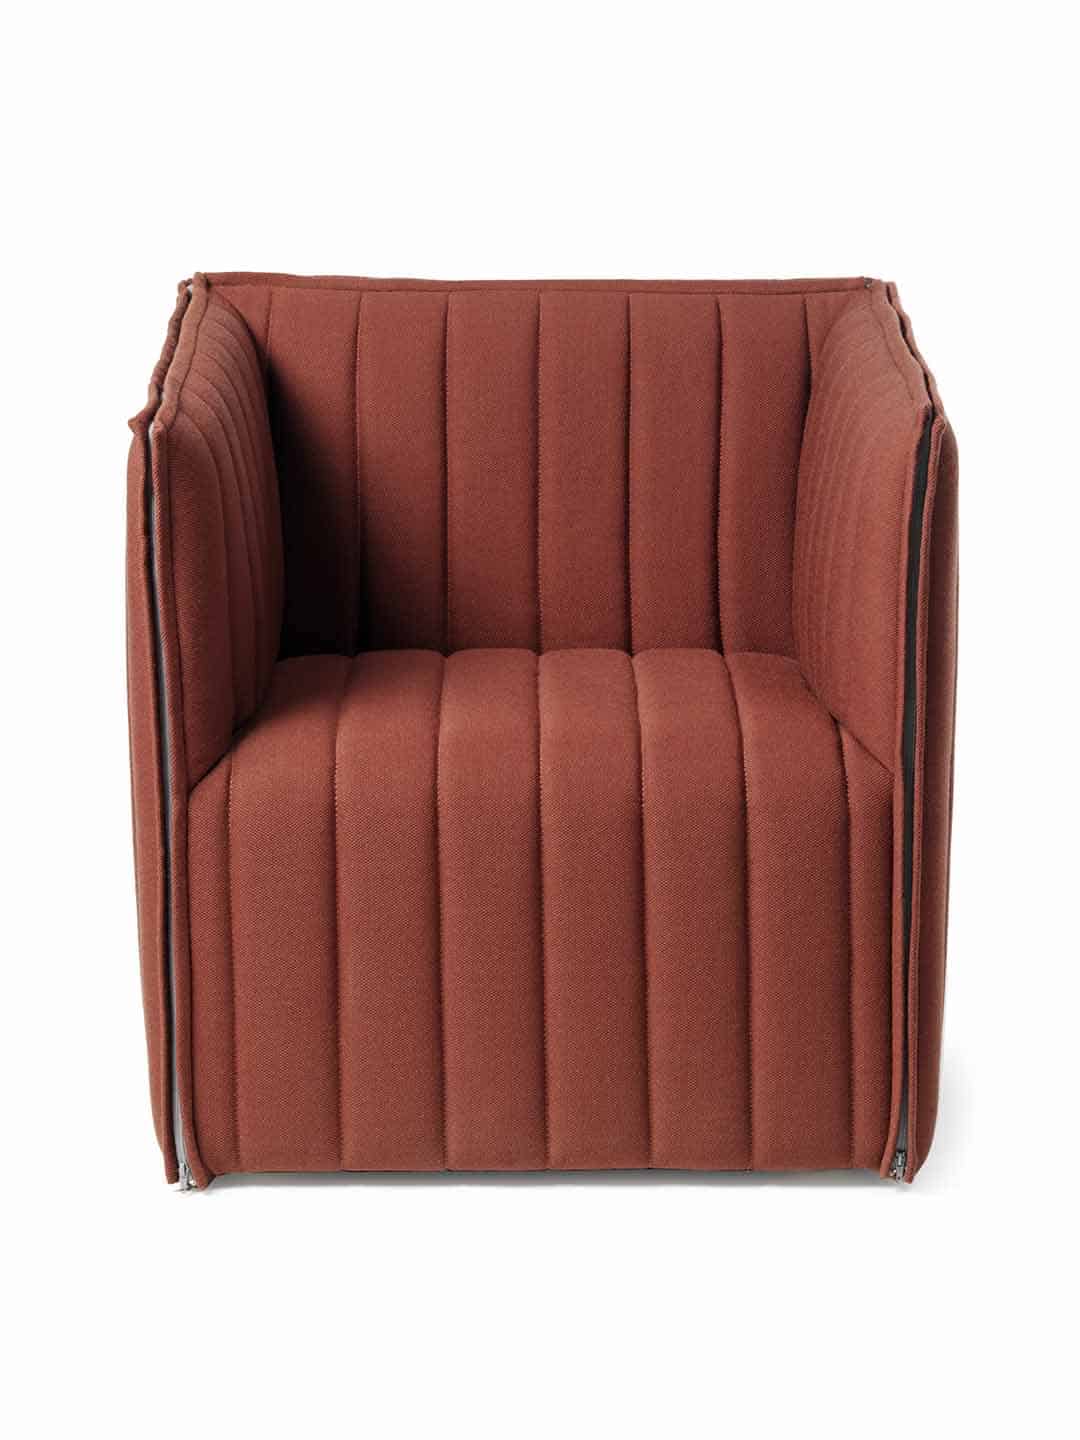 Красивое кресло Garsnas Kvilt easy в обивке кирпичного цвета